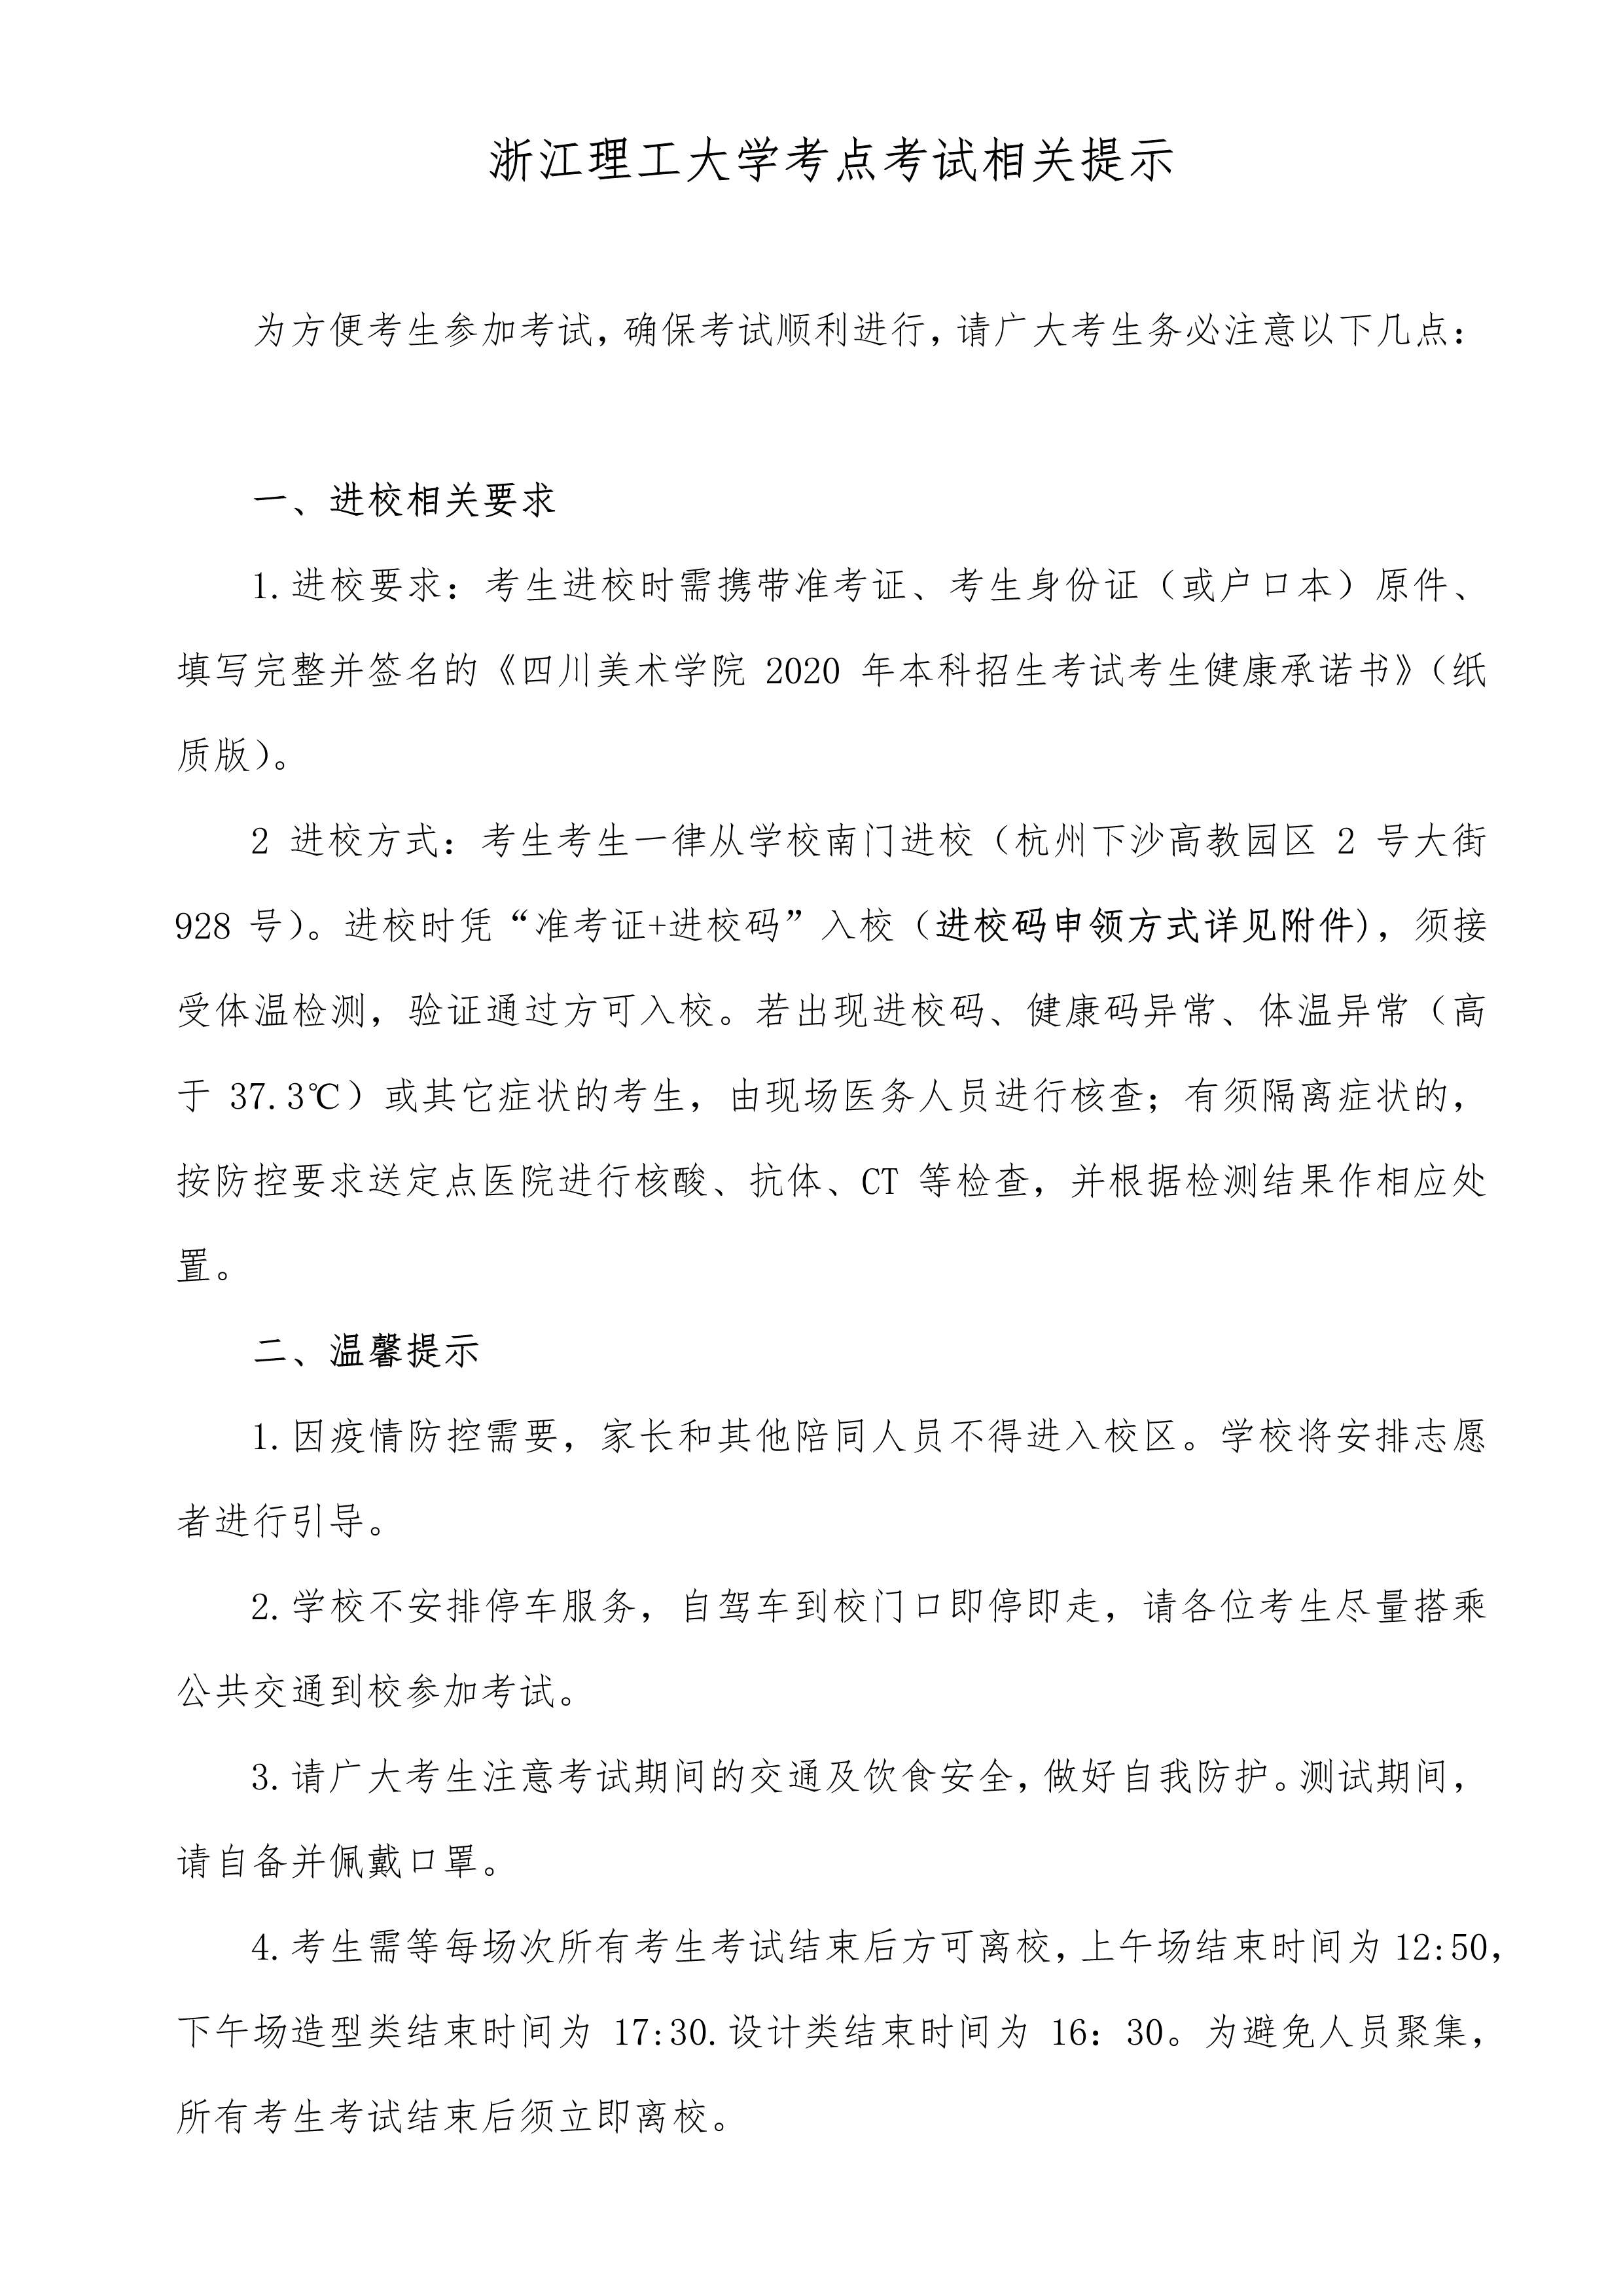 附件4：杭州考点考生防疫须知_1.jpg